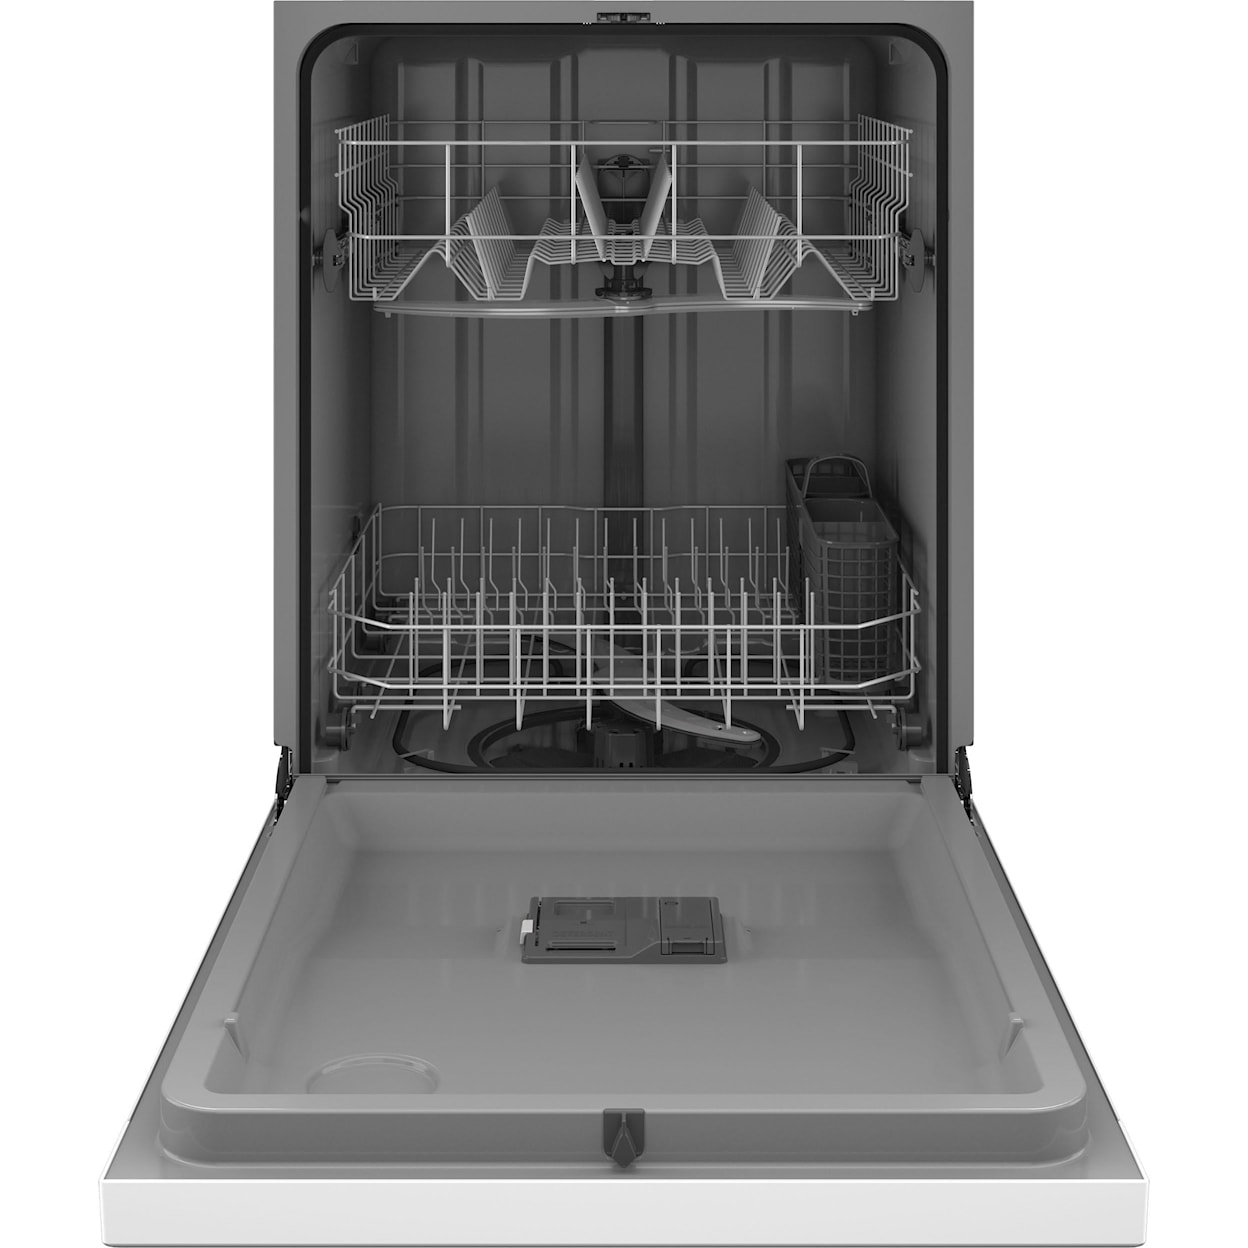 Hotpoint Dishwashers Dishwasher